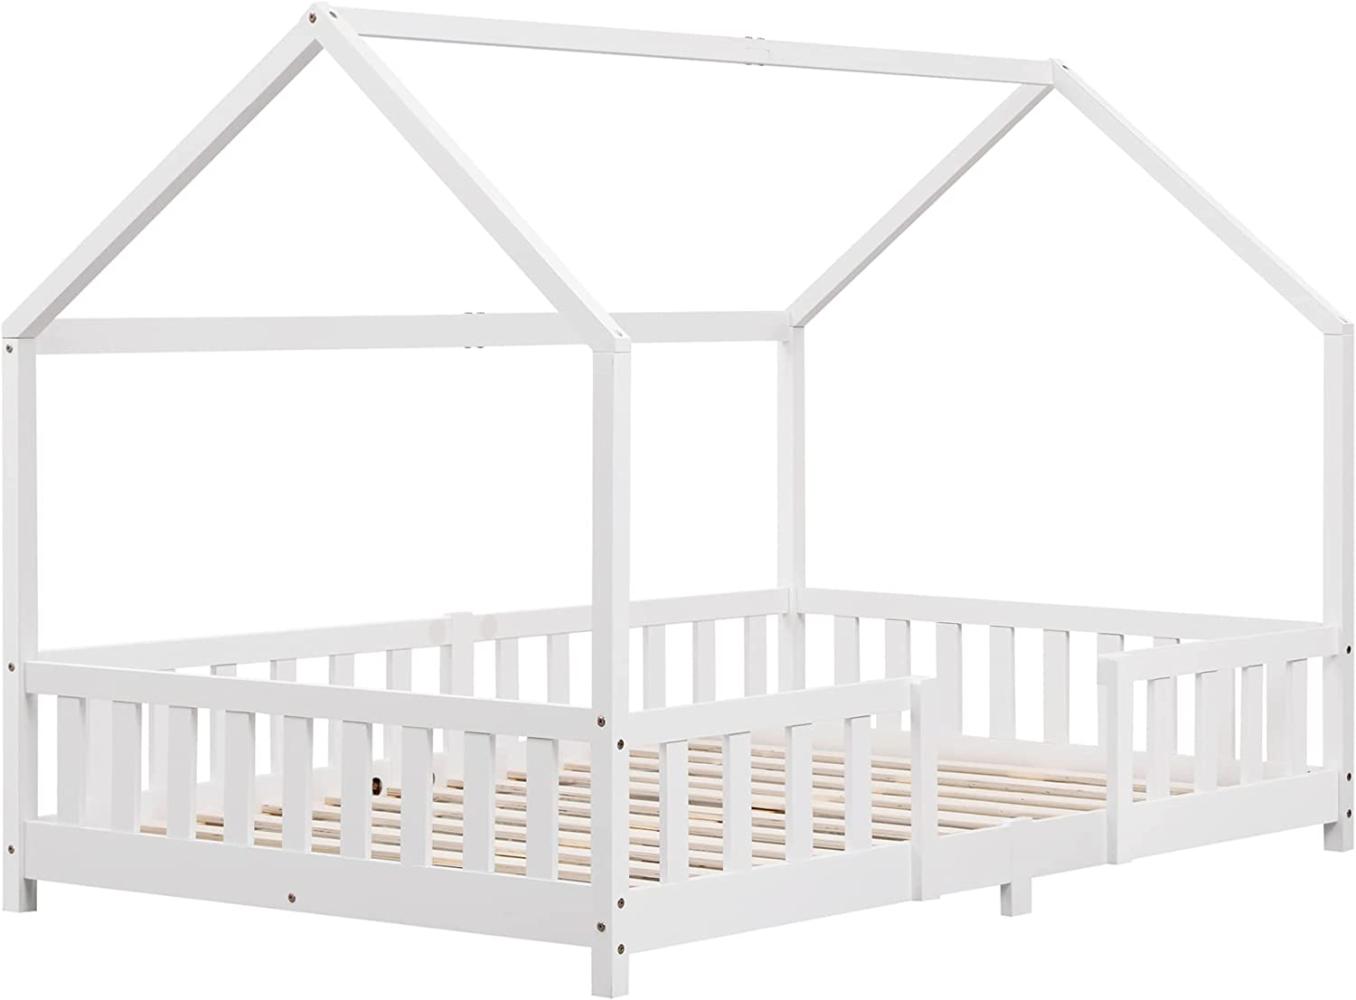 Kinderbett Sisimiut 120x200 cm mit Rausfallschutz Weiß [en. casa] Bild 1